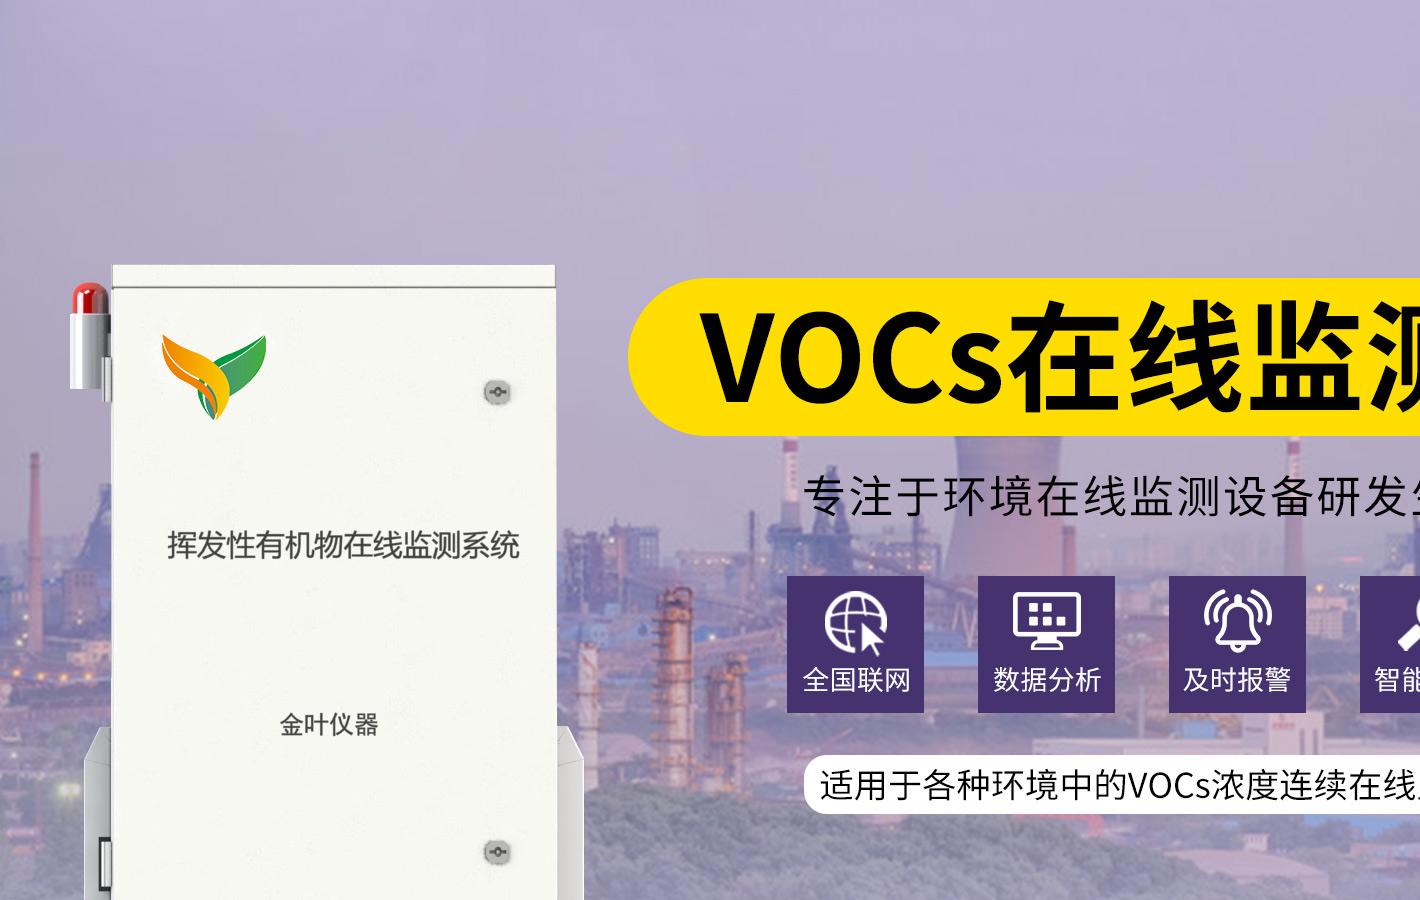 vocs在线监测仪气体检测系统解决方案